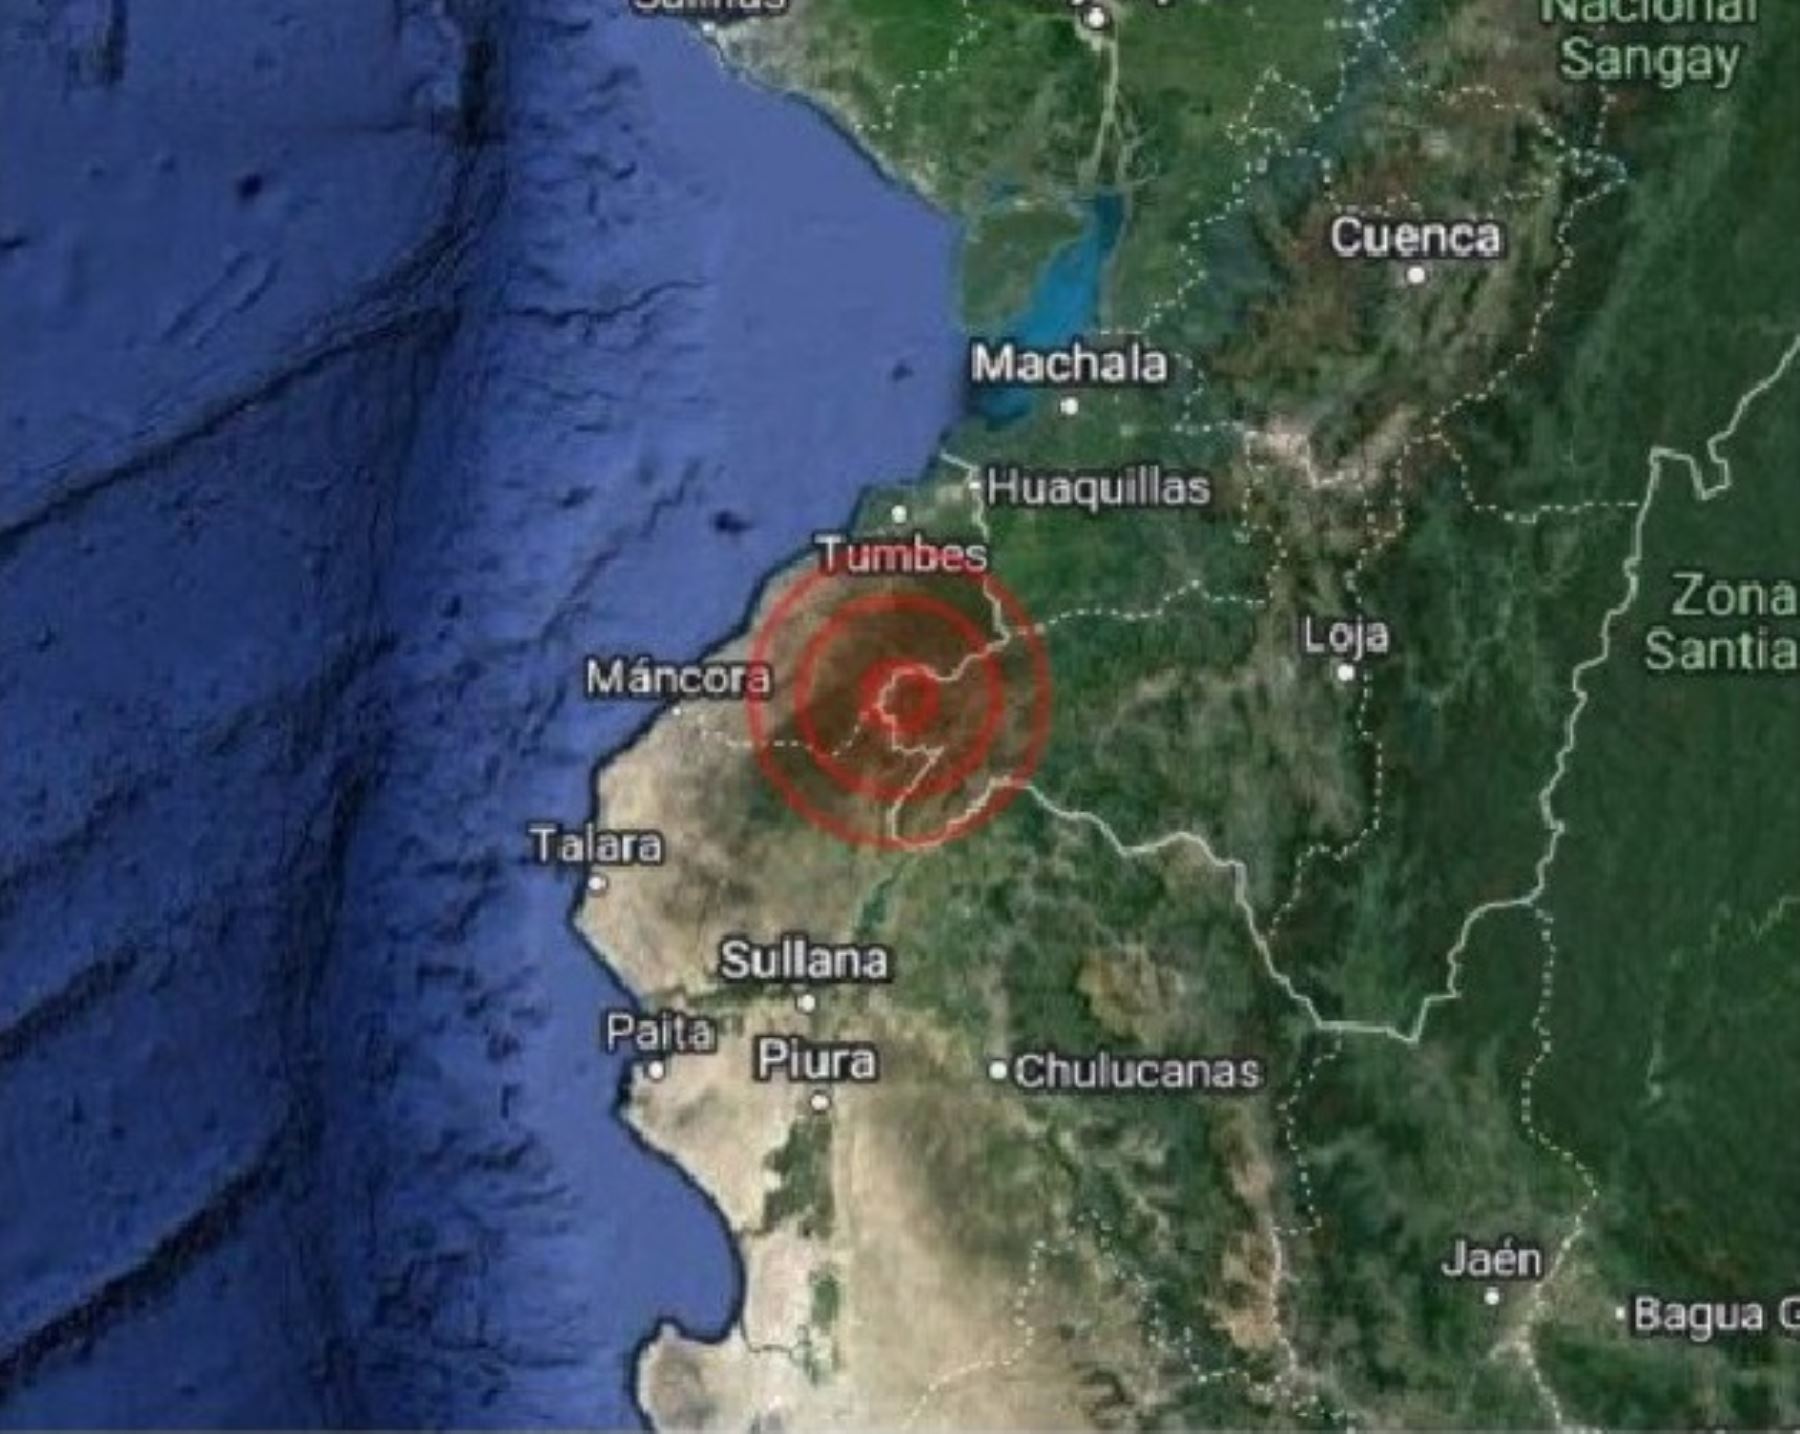 Región Tumbes fue remecida esta madrugada por un temblor de magnitud 4.0, informó el IGP.